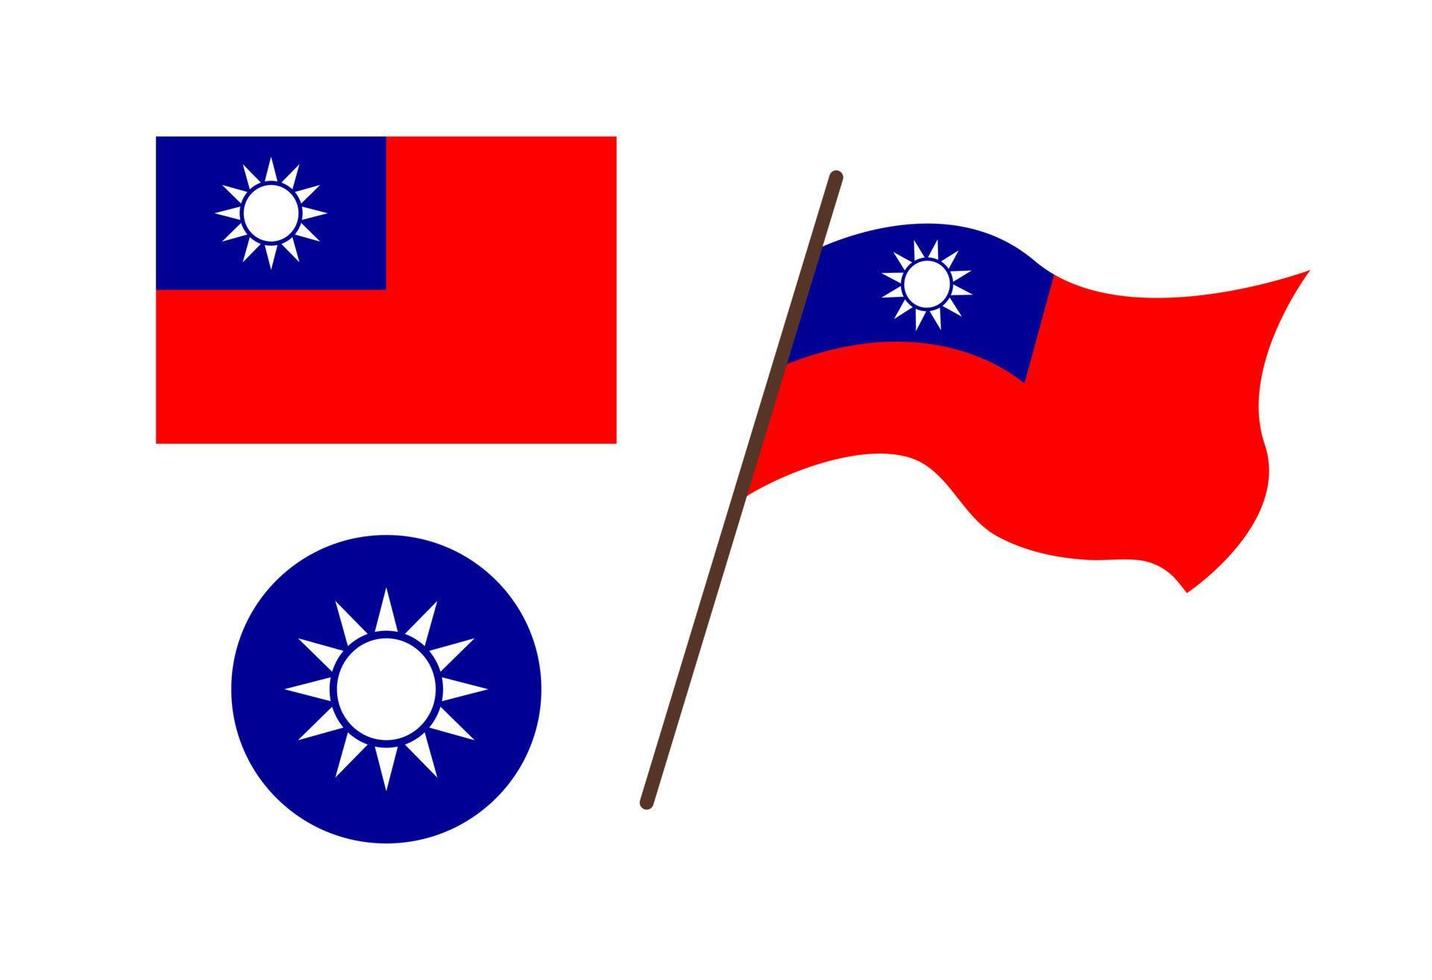 Taiwan-Symbole isoliert. Vektorrote Flagge und blaues Emblem mit weißer Sonnenform. schwenkende Flagge der Republik China, Taiwan. flache Abbildung vektor